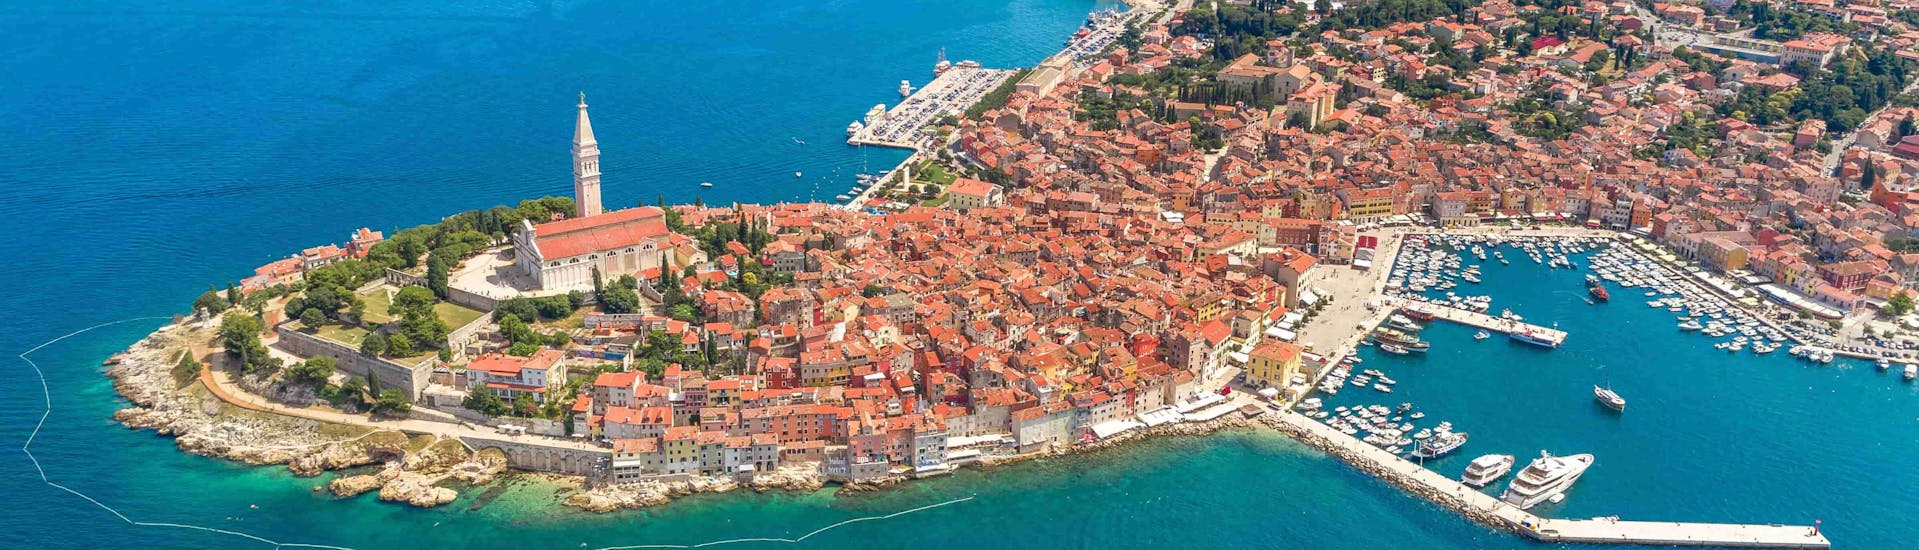 La ciudad vista desde el cielo donde tiene lugar el Paseo en Barco de Vrsar a Rovinj y el Fiordo de Lim con Lidija Tours Vrsar.